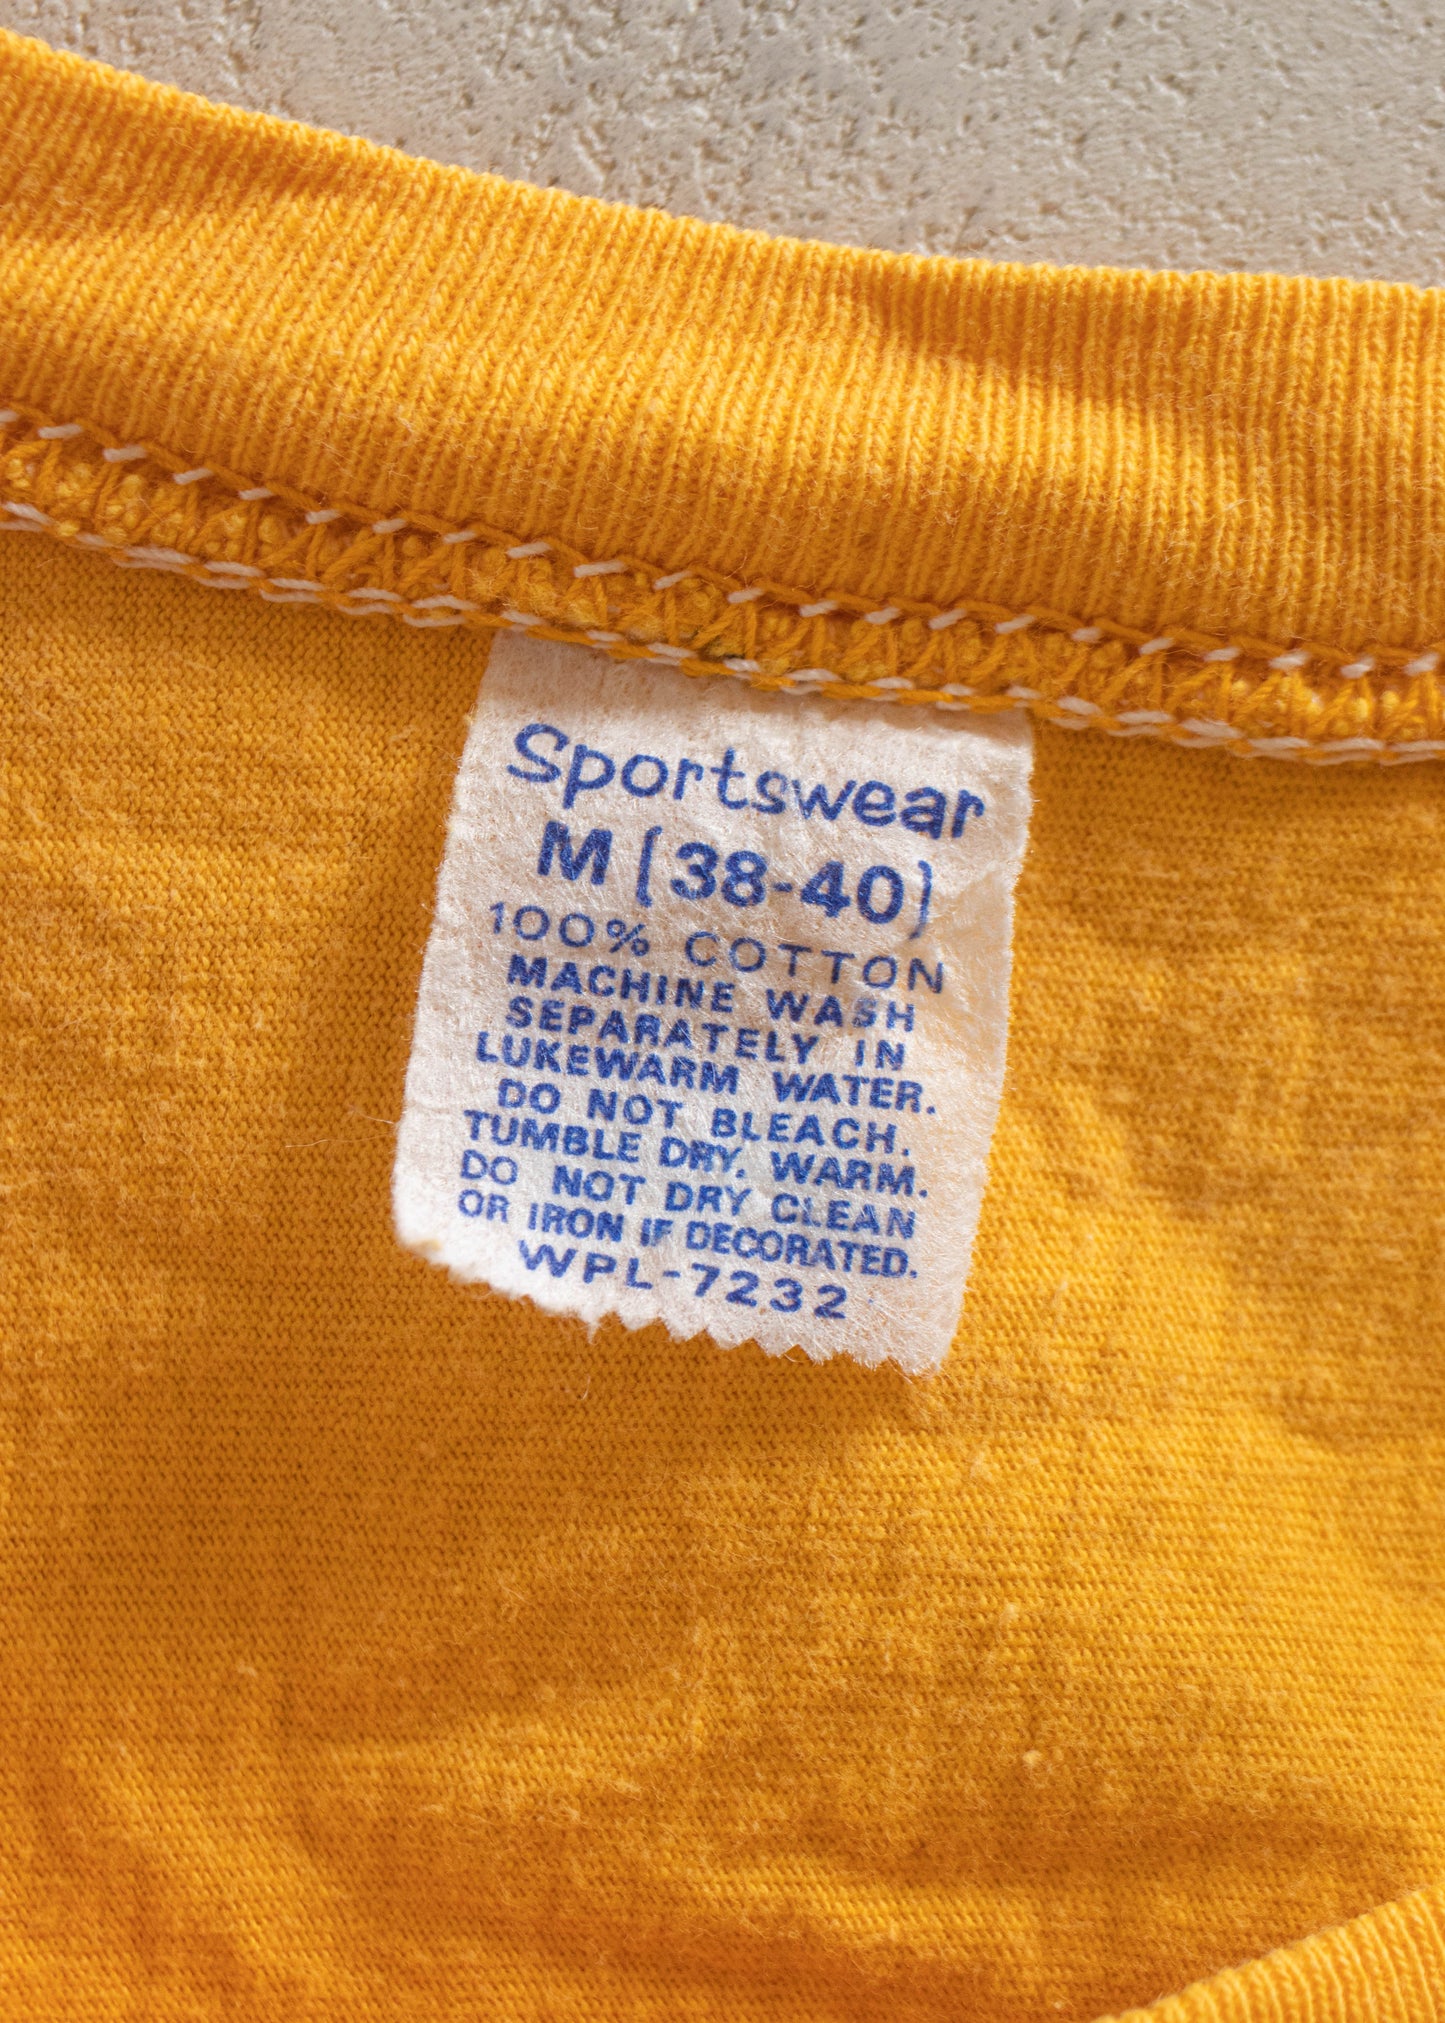 1980s Sportswear Trojan Swimming Sport T-Shirt Size S/M